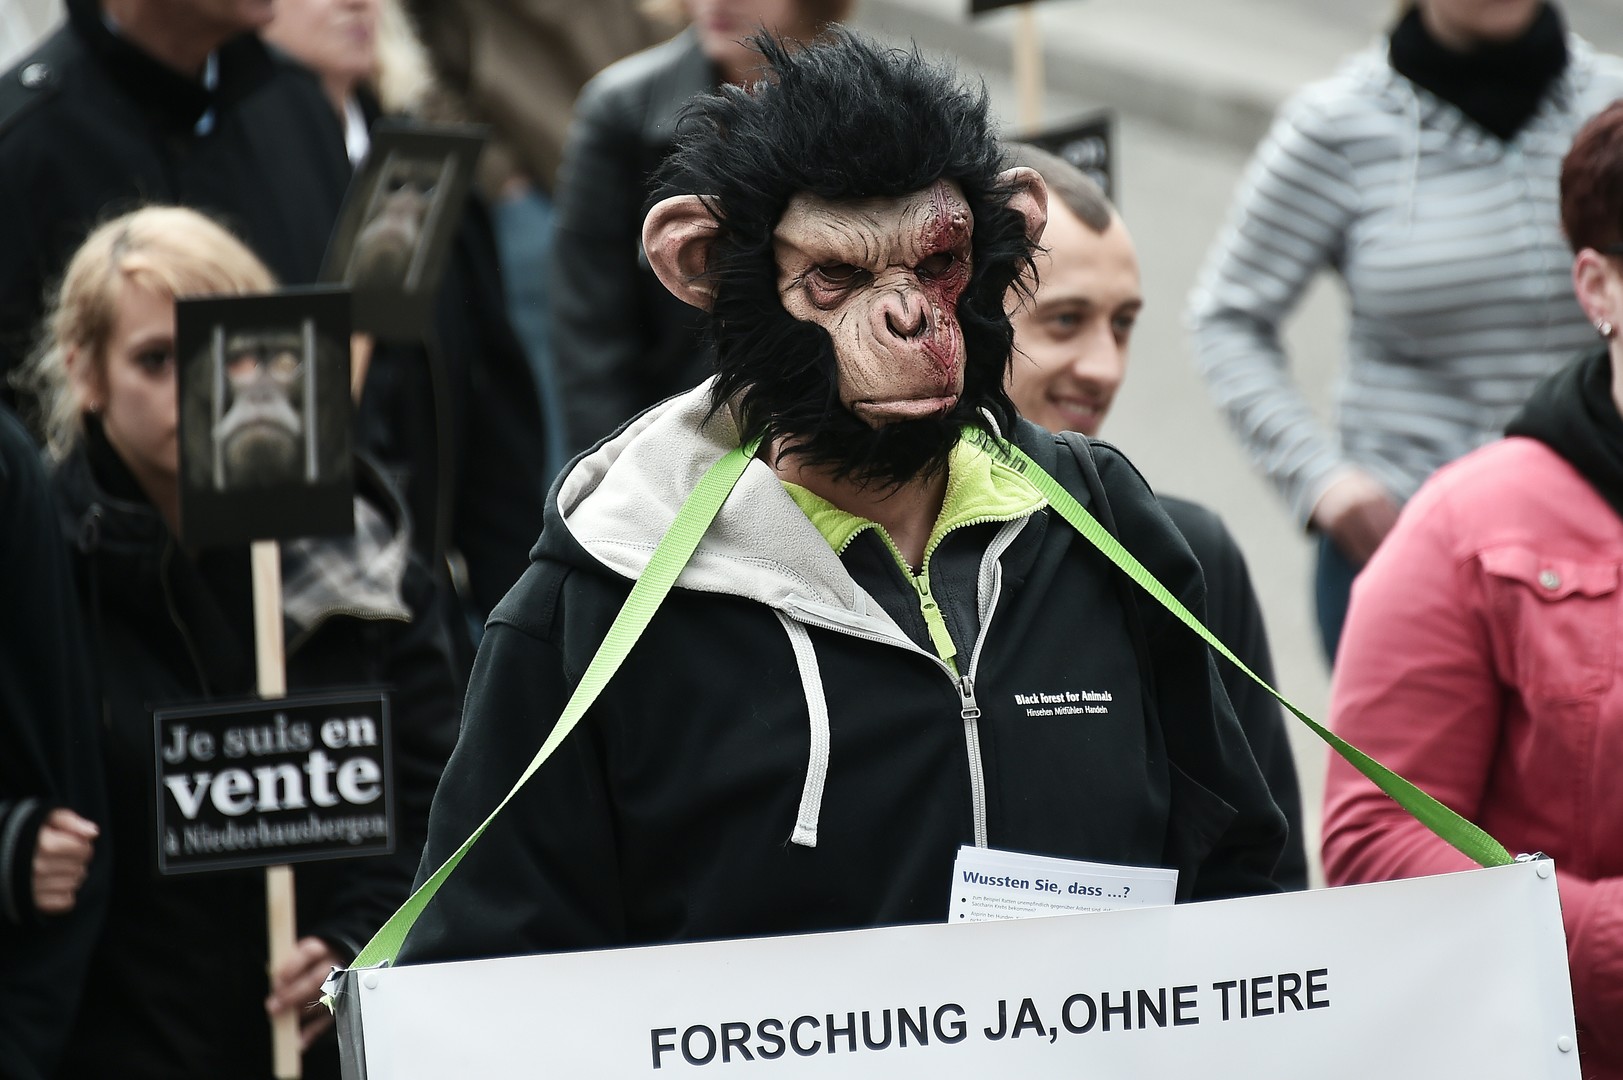 Défense des animaux : une «armée de singes» envahit les rues de Strasbourg  (PHOTOS)